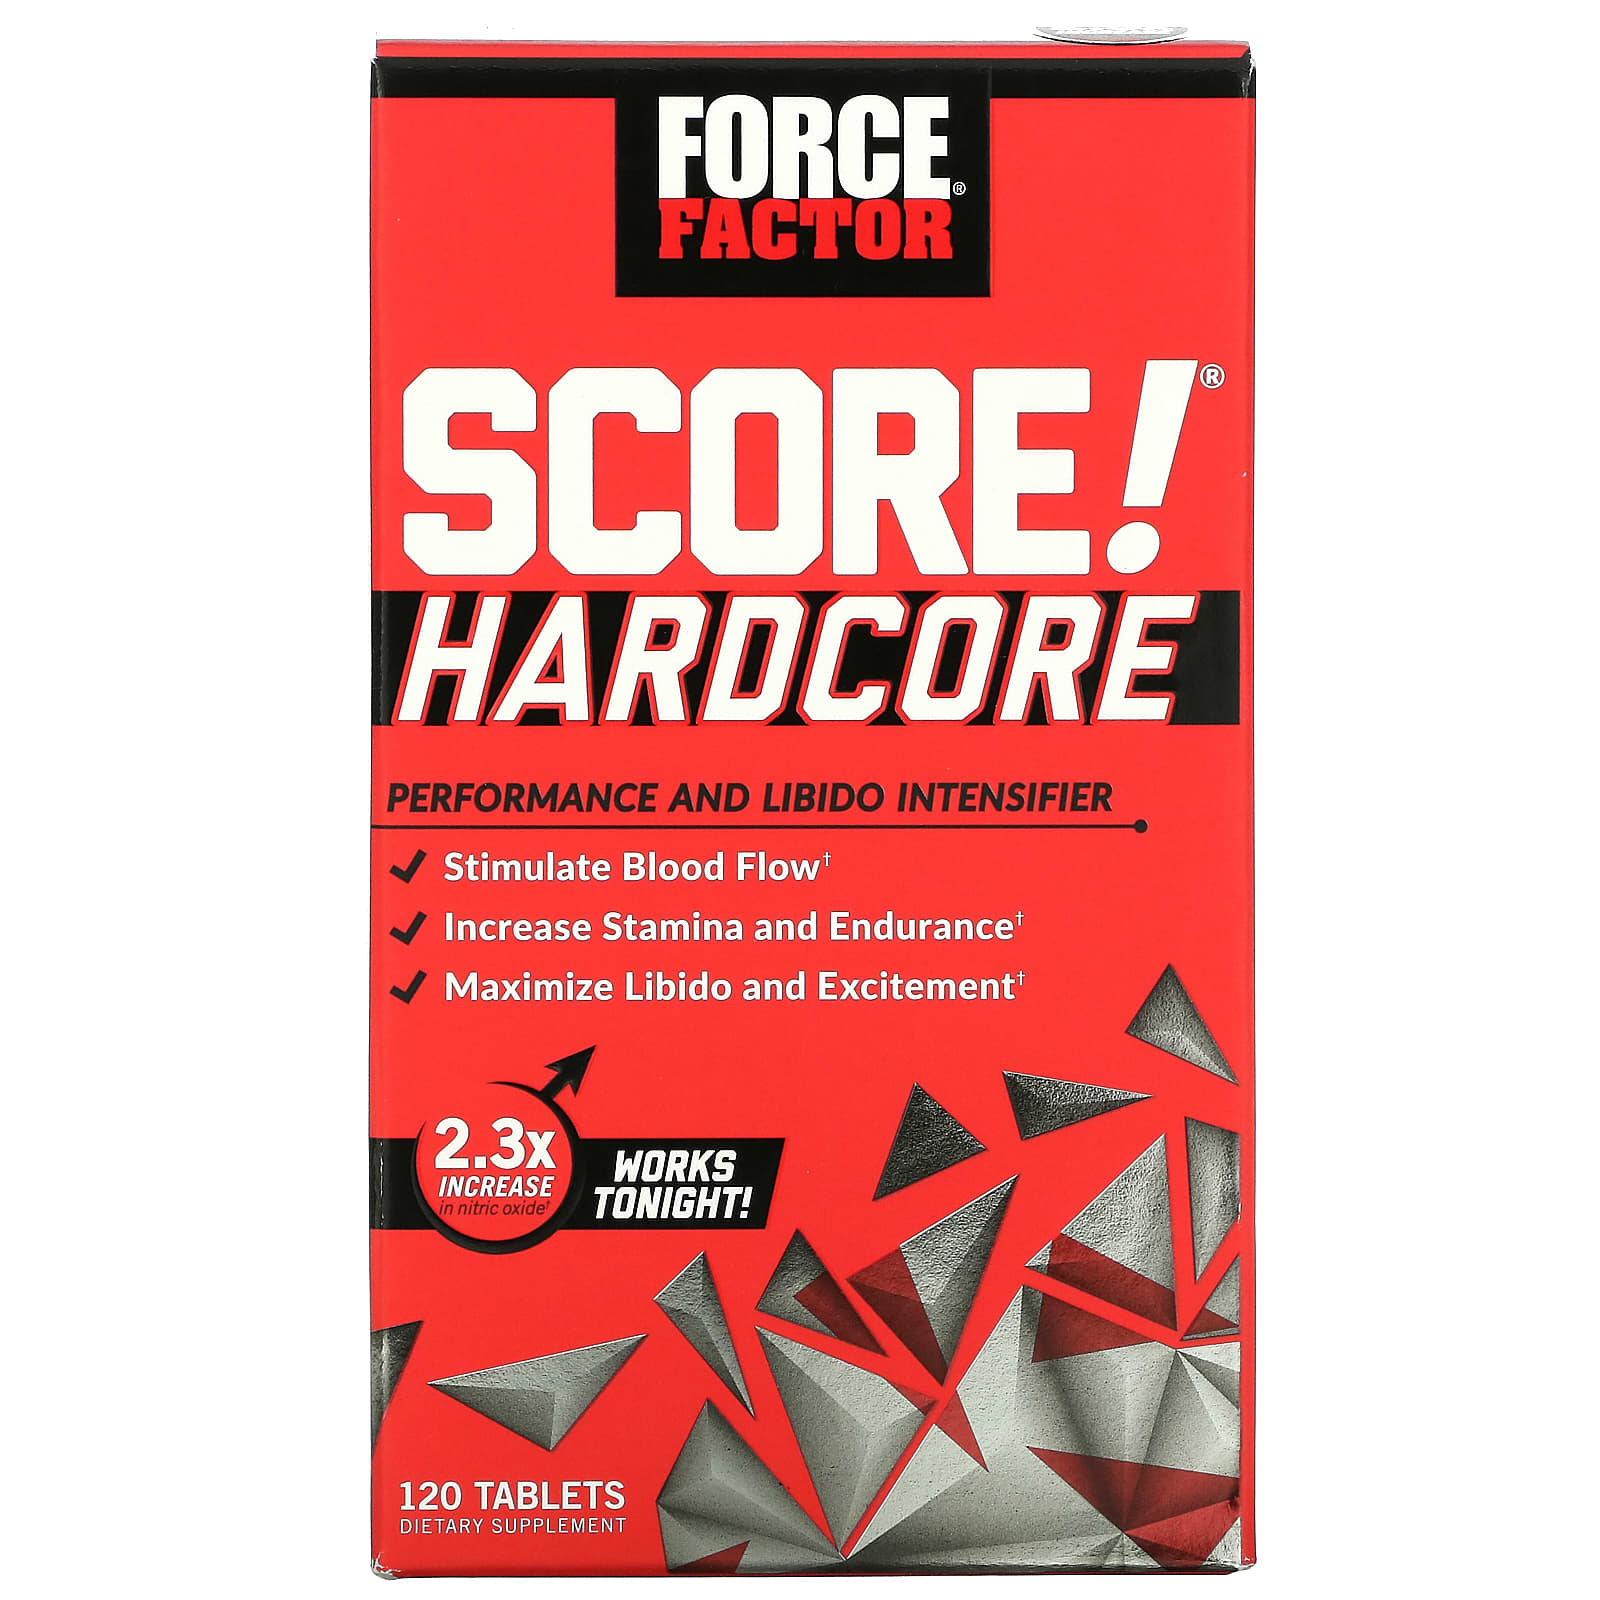 Средство Force Factor для повышения производительности и либидо, 120 таблеток force factor score hardcore средство для повышения производительности и либидо 120 таблеток